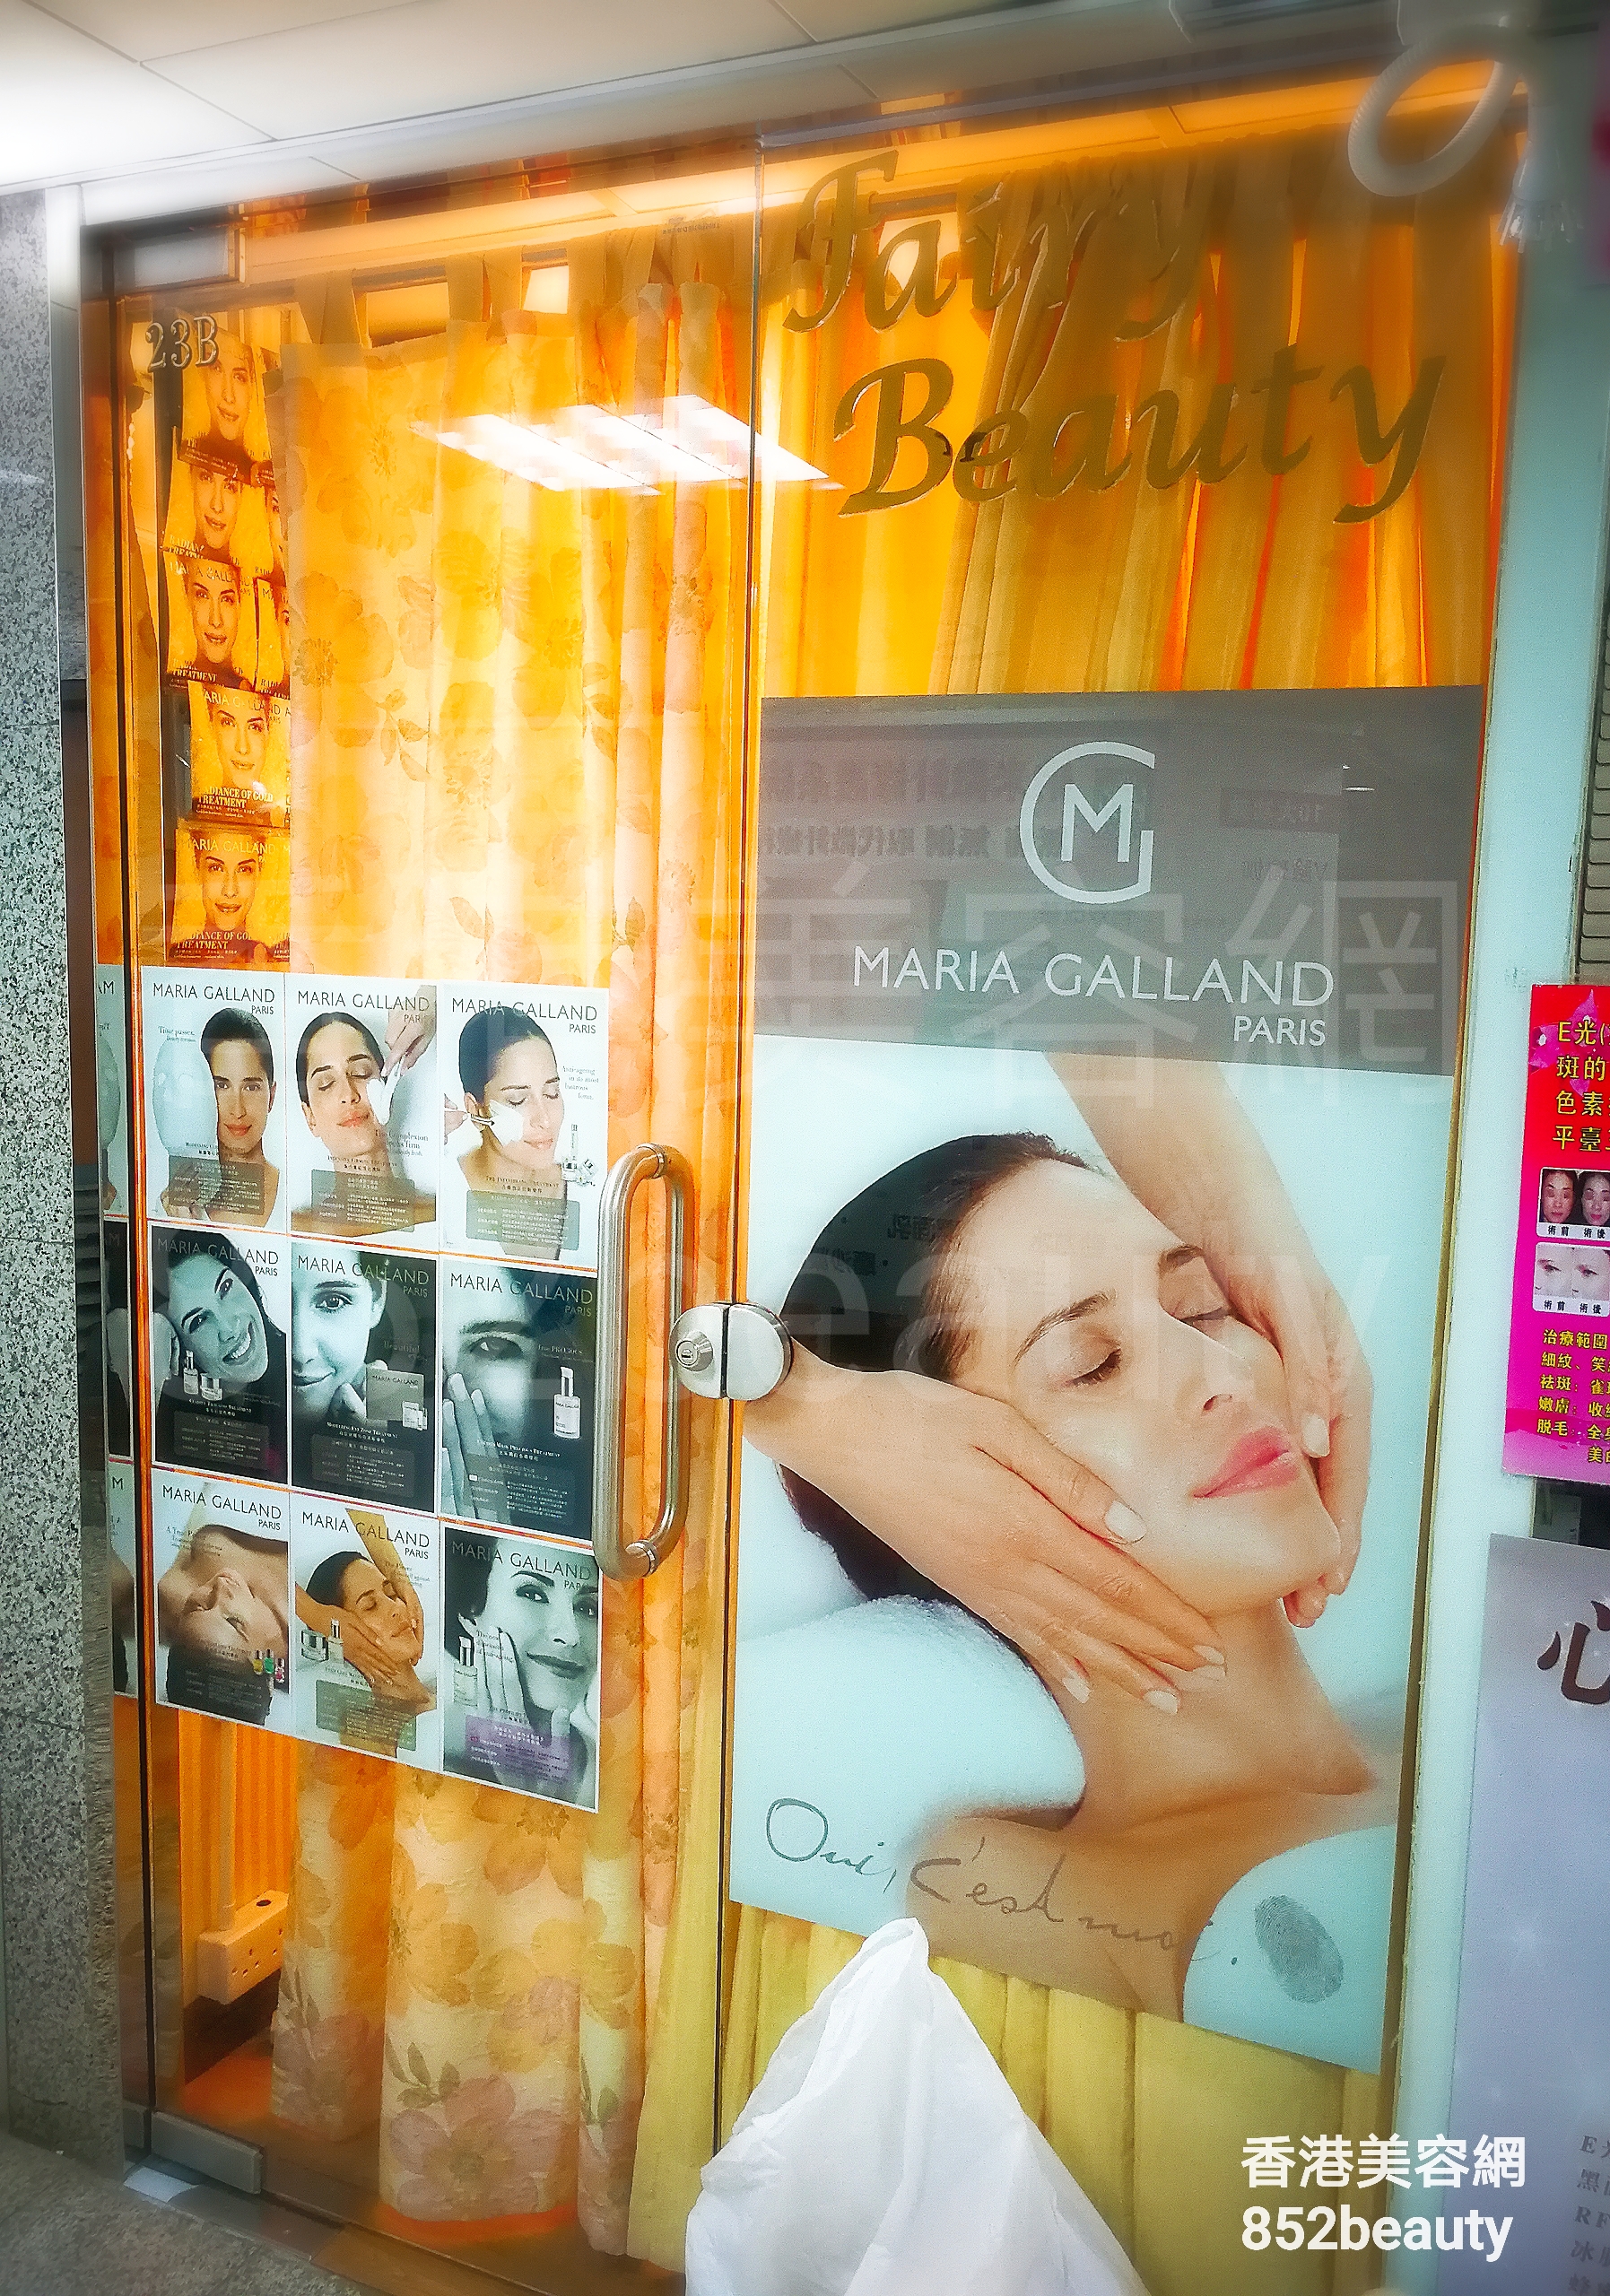 香港美容網 Hong Kong Beauty Salon 美容院 / 美容師: Fairy Beauty